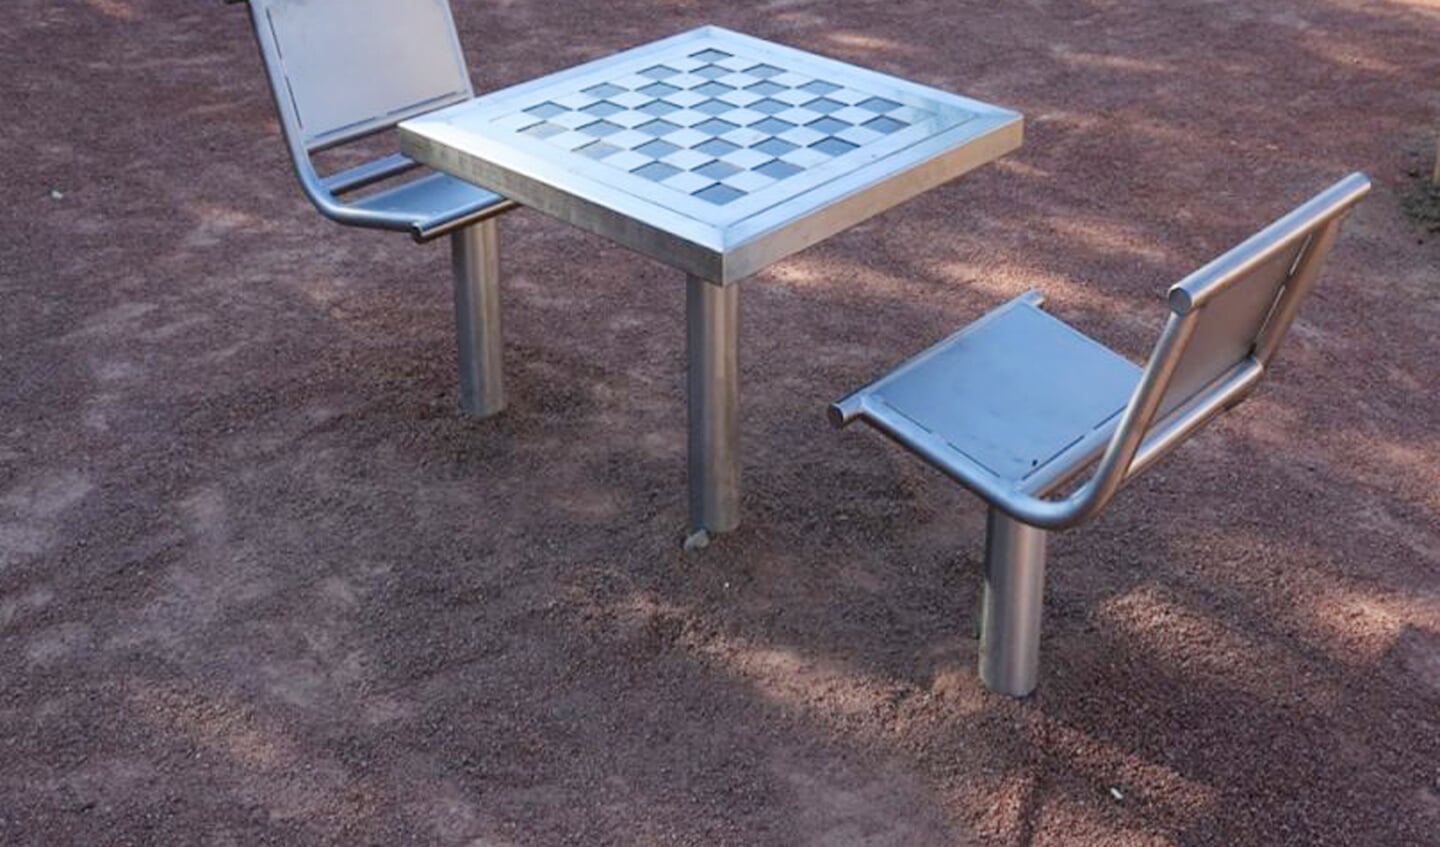 Voorbeeld van een buiten schaaktafel.